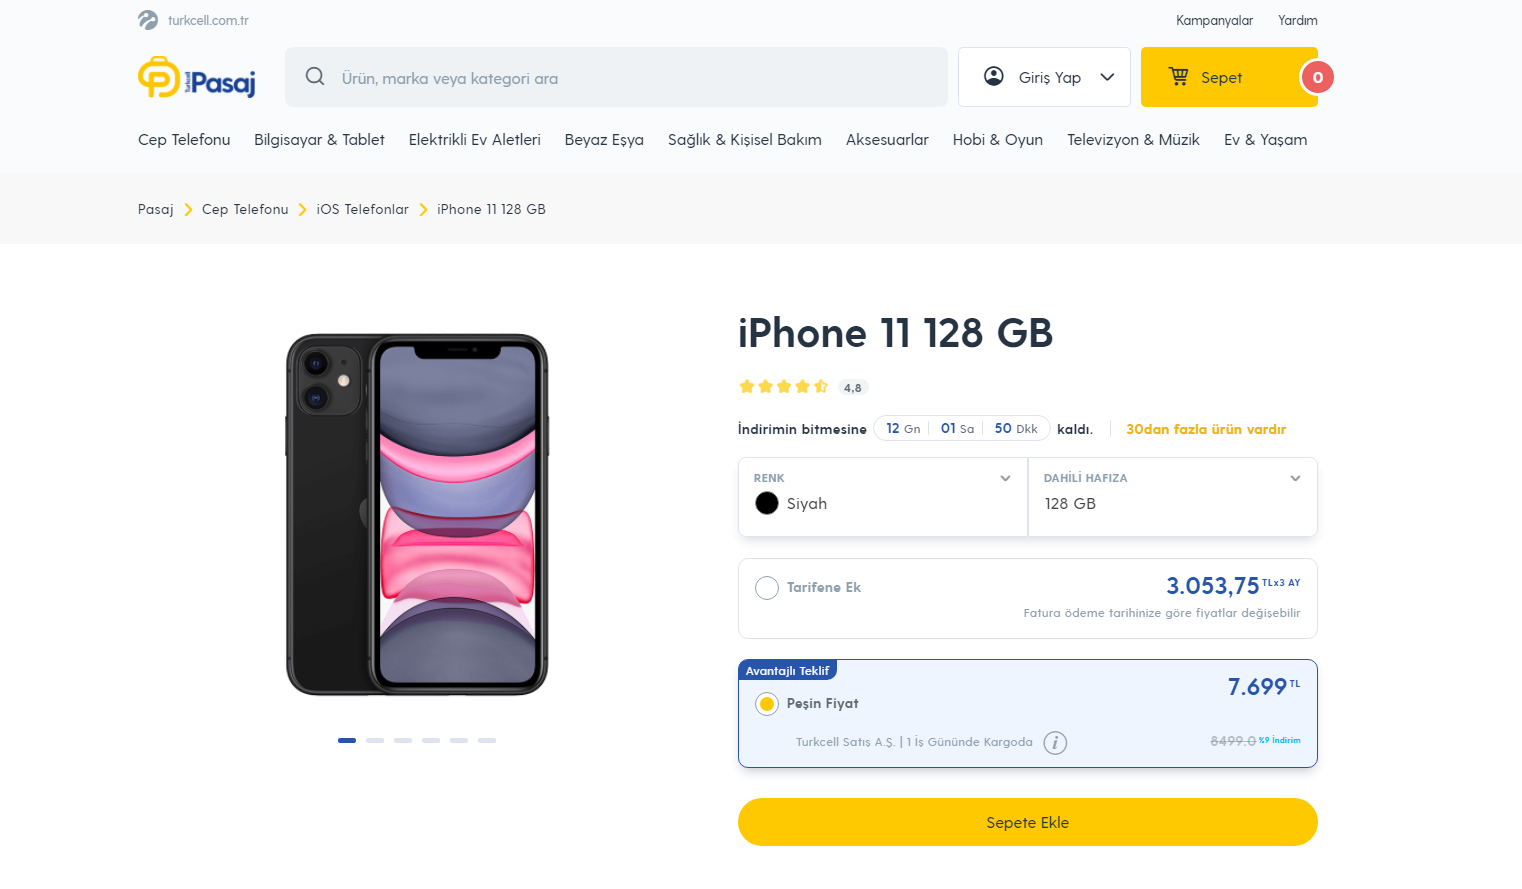 iPhone 11 Turkcell mağaza fiyatı aynı mıdır? | Technopat Sosyal